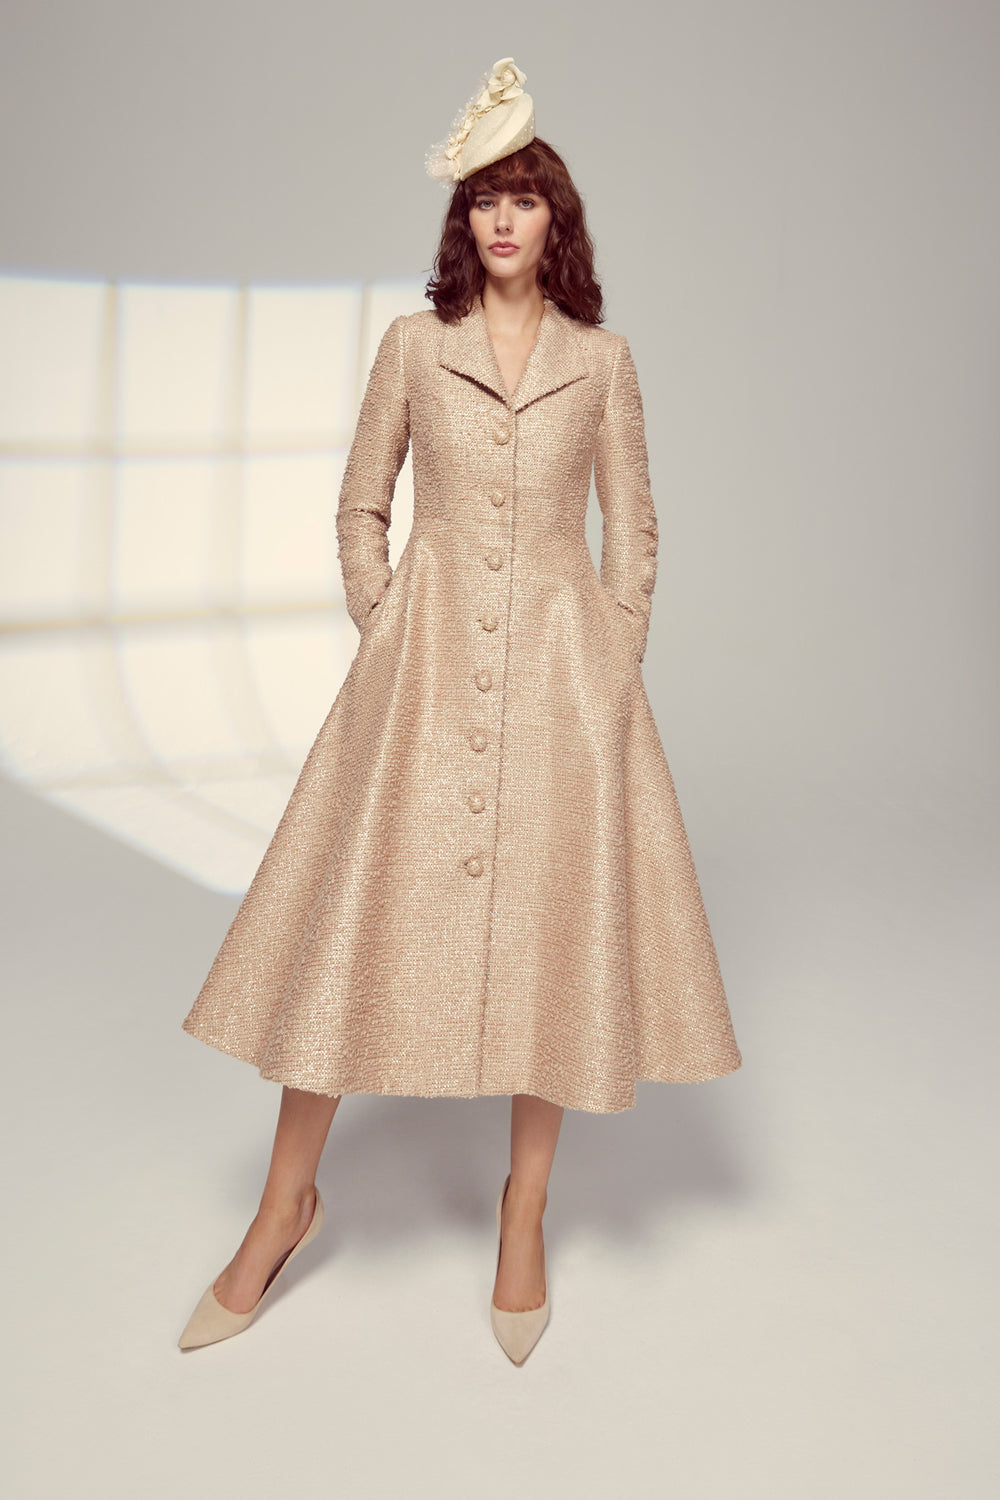 Tweed-Effect Jacquard Dress - Women - Ready-to-Wear